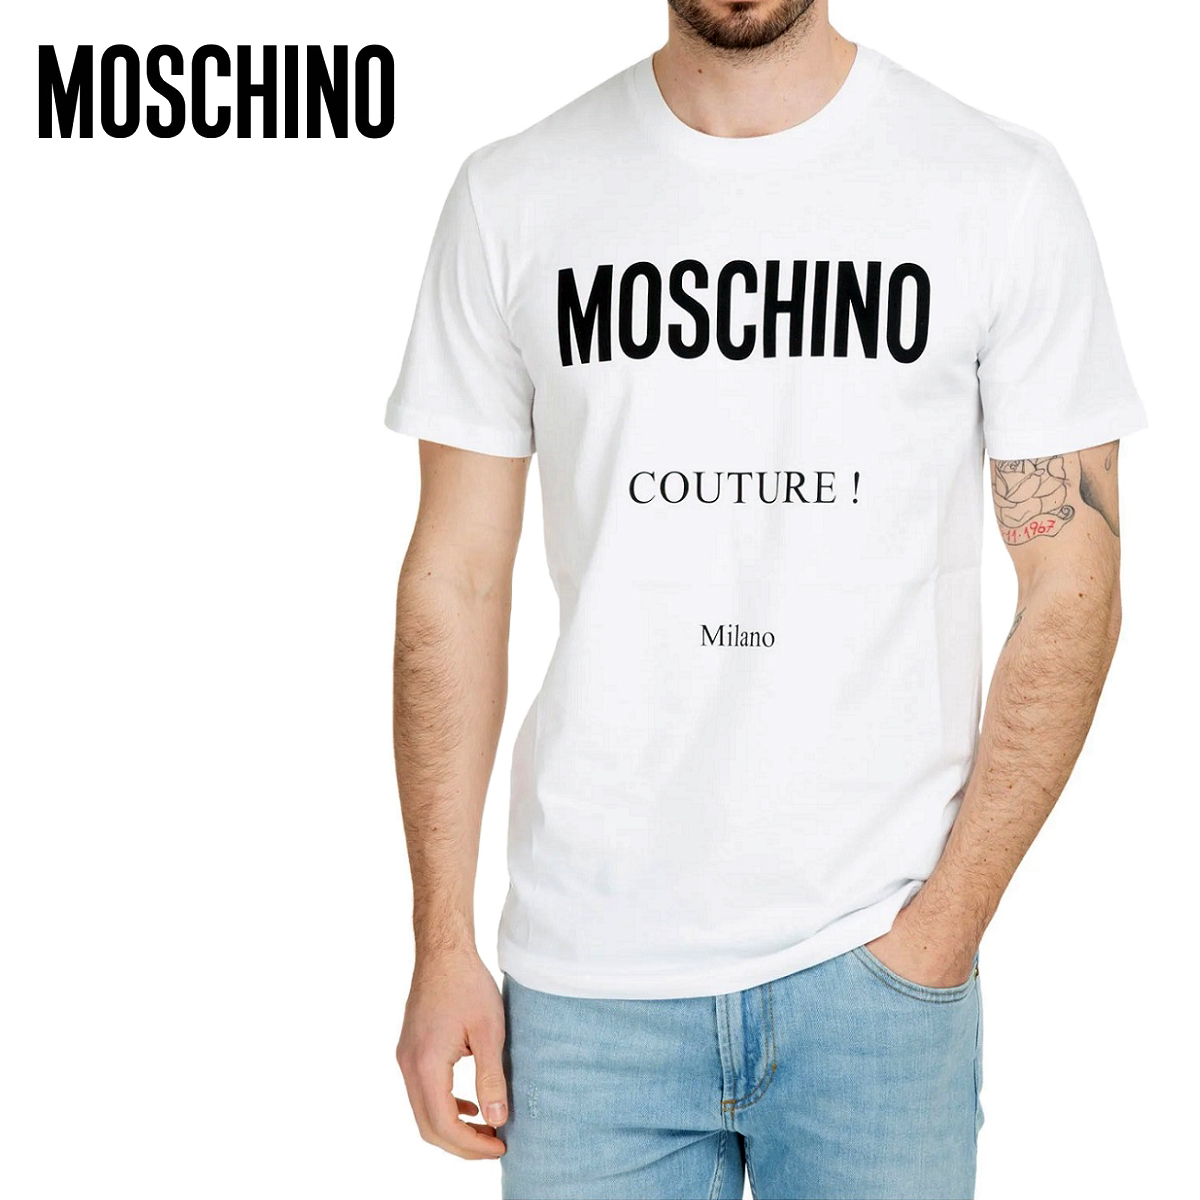 送料無料 4 MOSCHINO モスキーノ A0707 2041 ホワイト Tシャツ カットソー 半袖 size 48